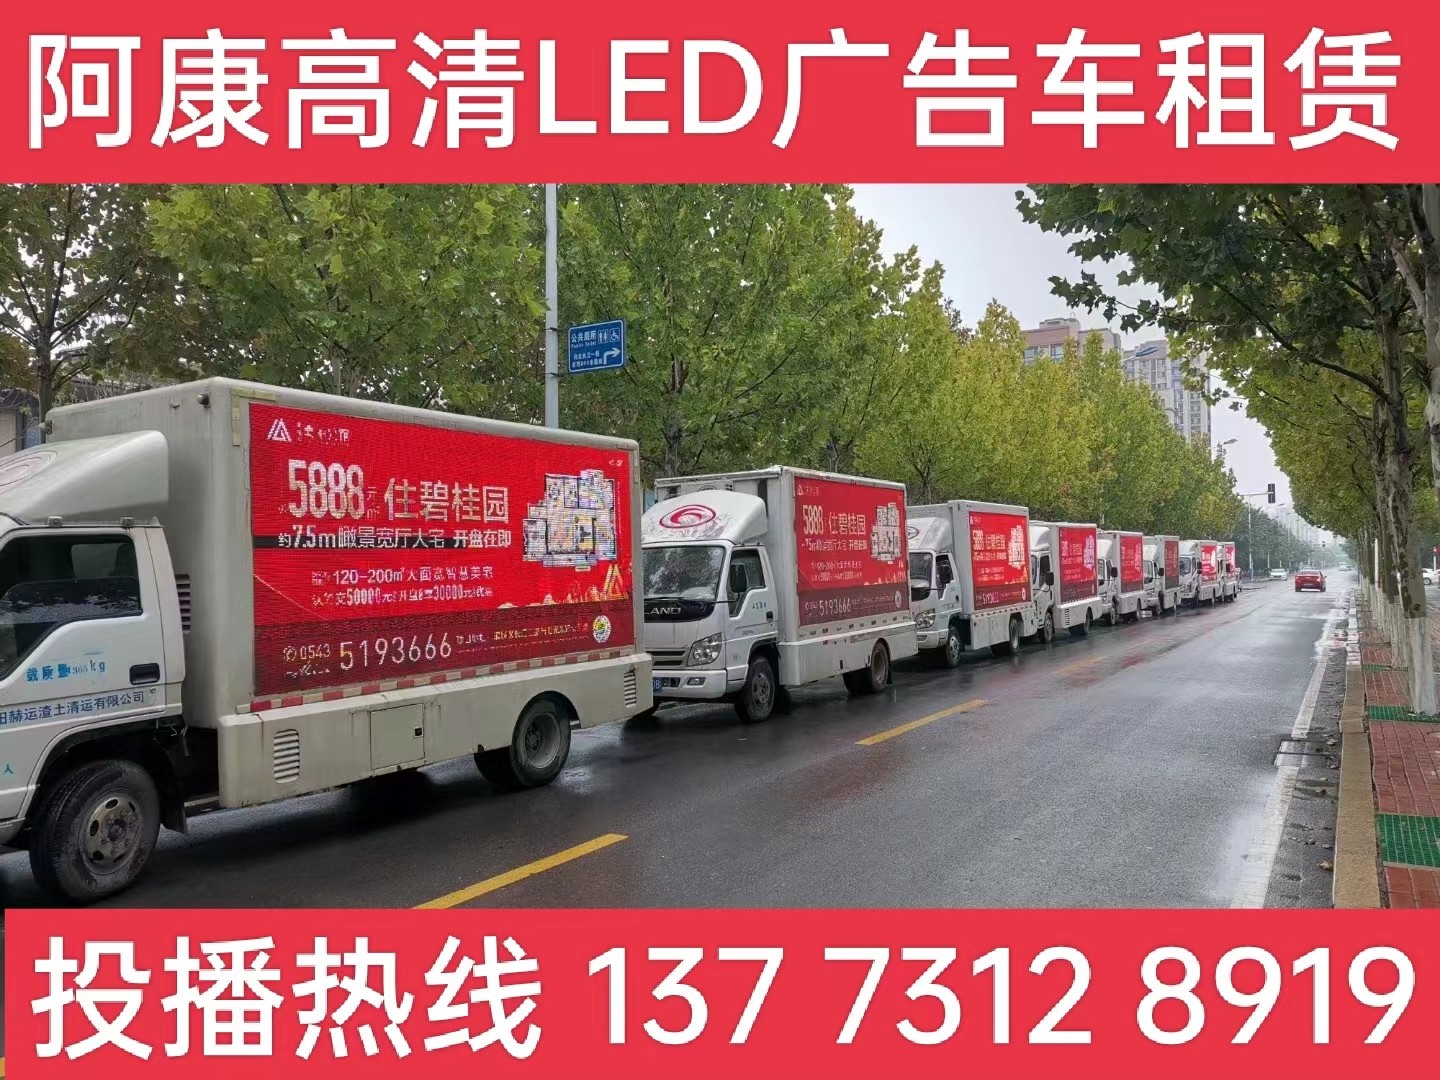  建邺区宣传车租赁公司-楼盘LED广告车投放